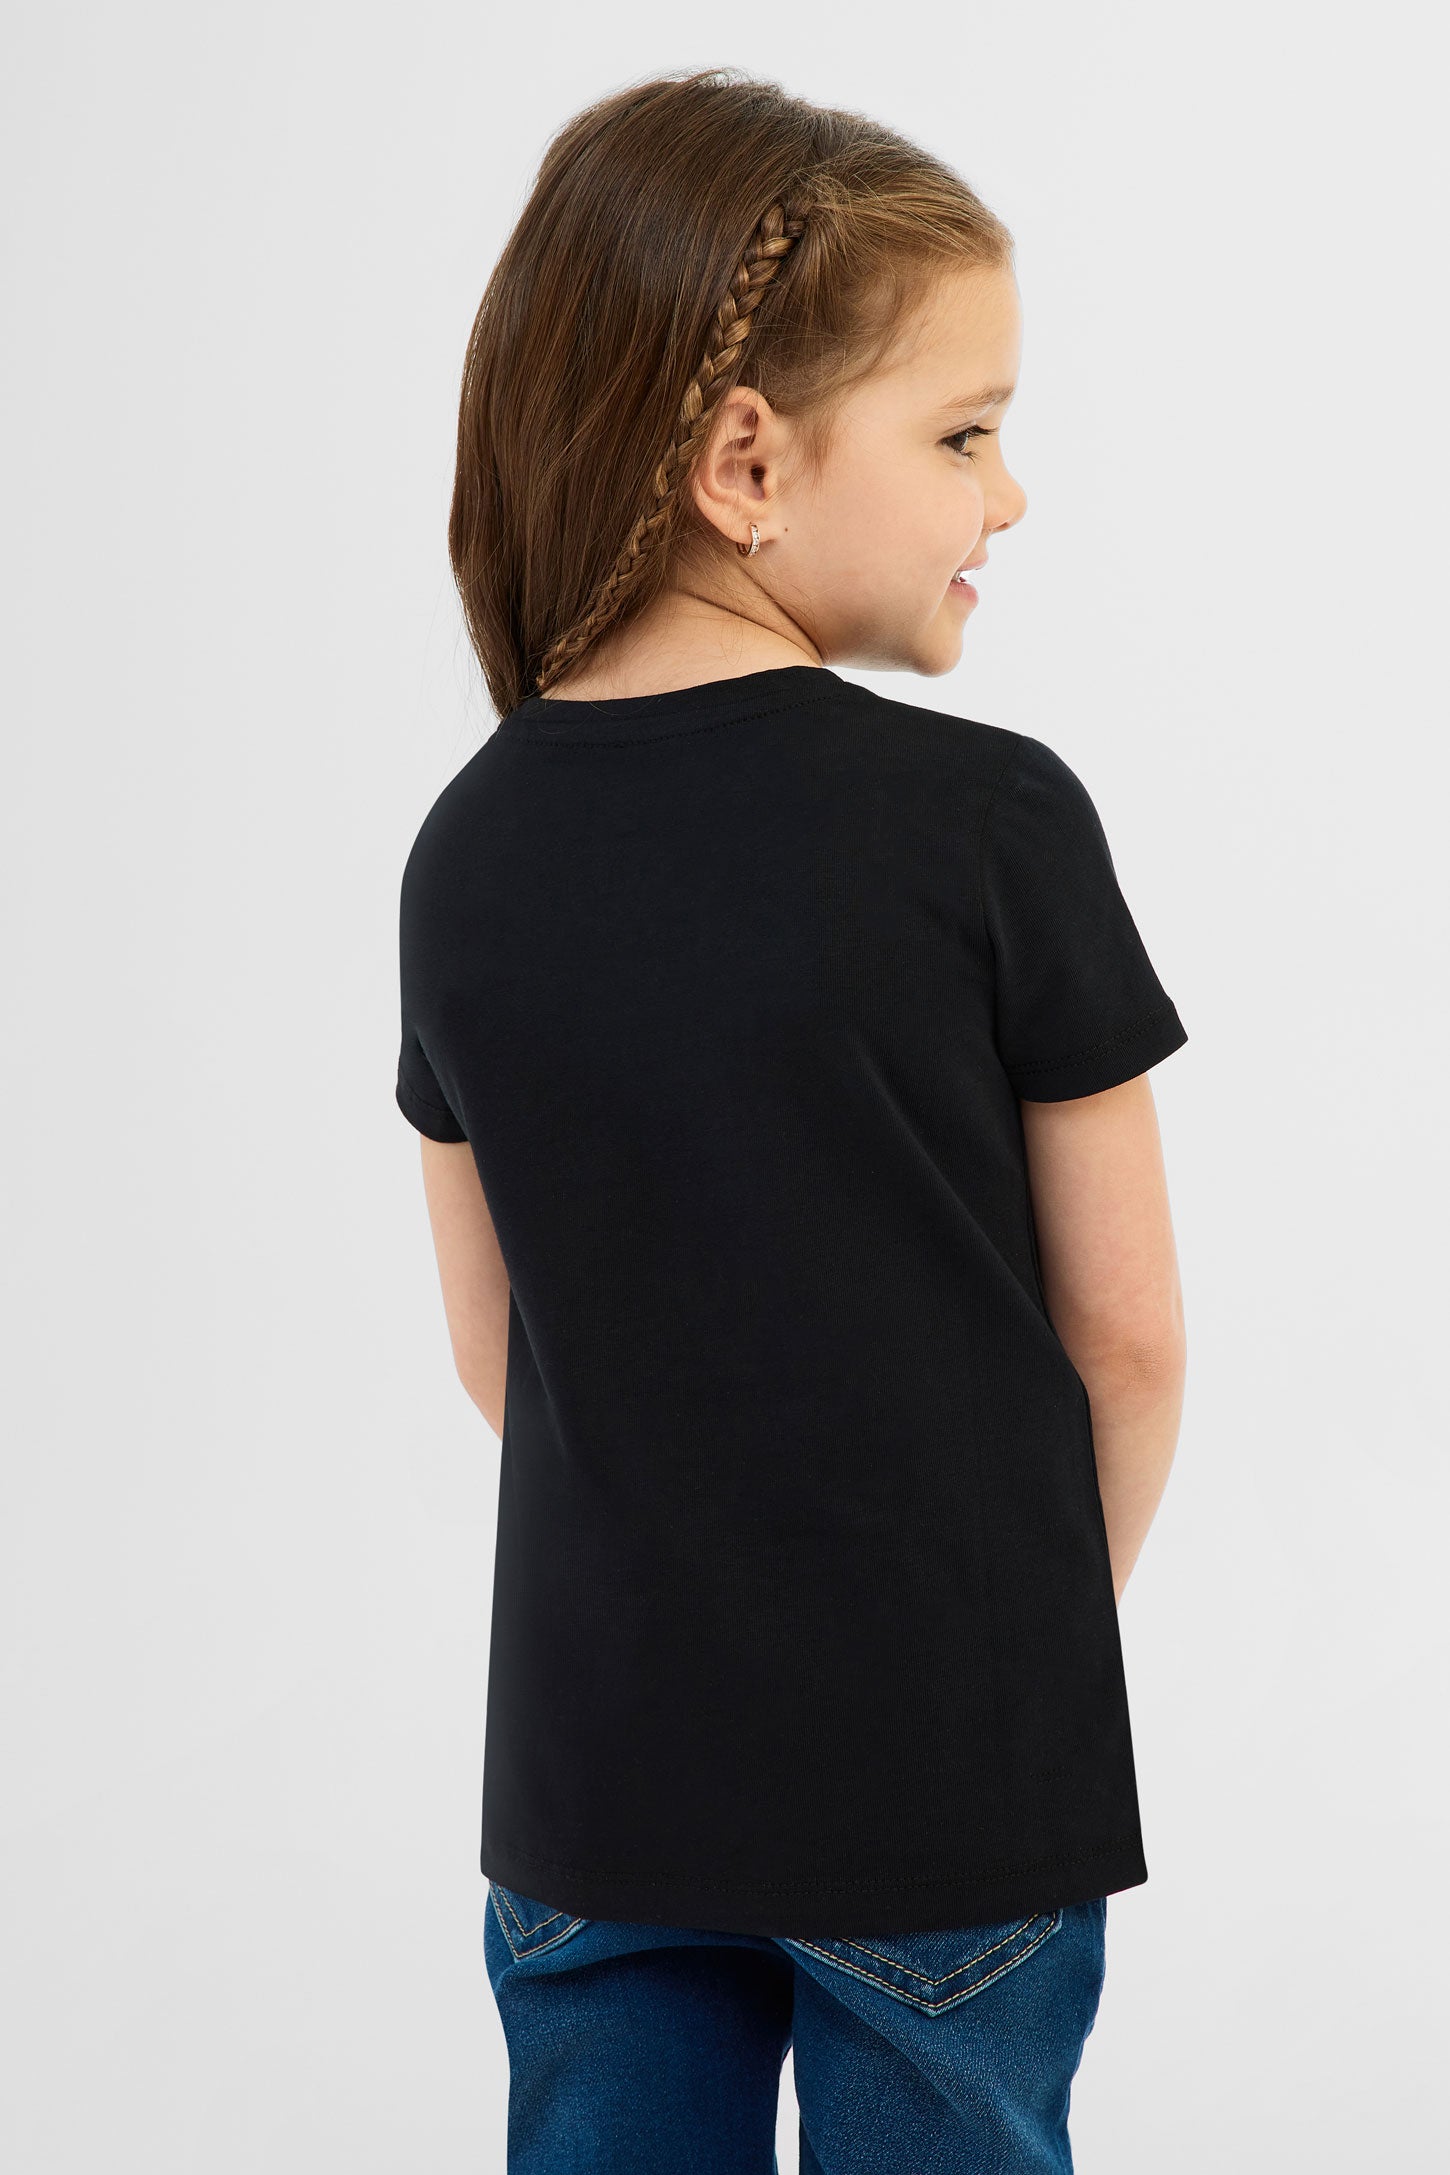 T-shirt en coton, 2/20$ - Enfant fille && NOIR